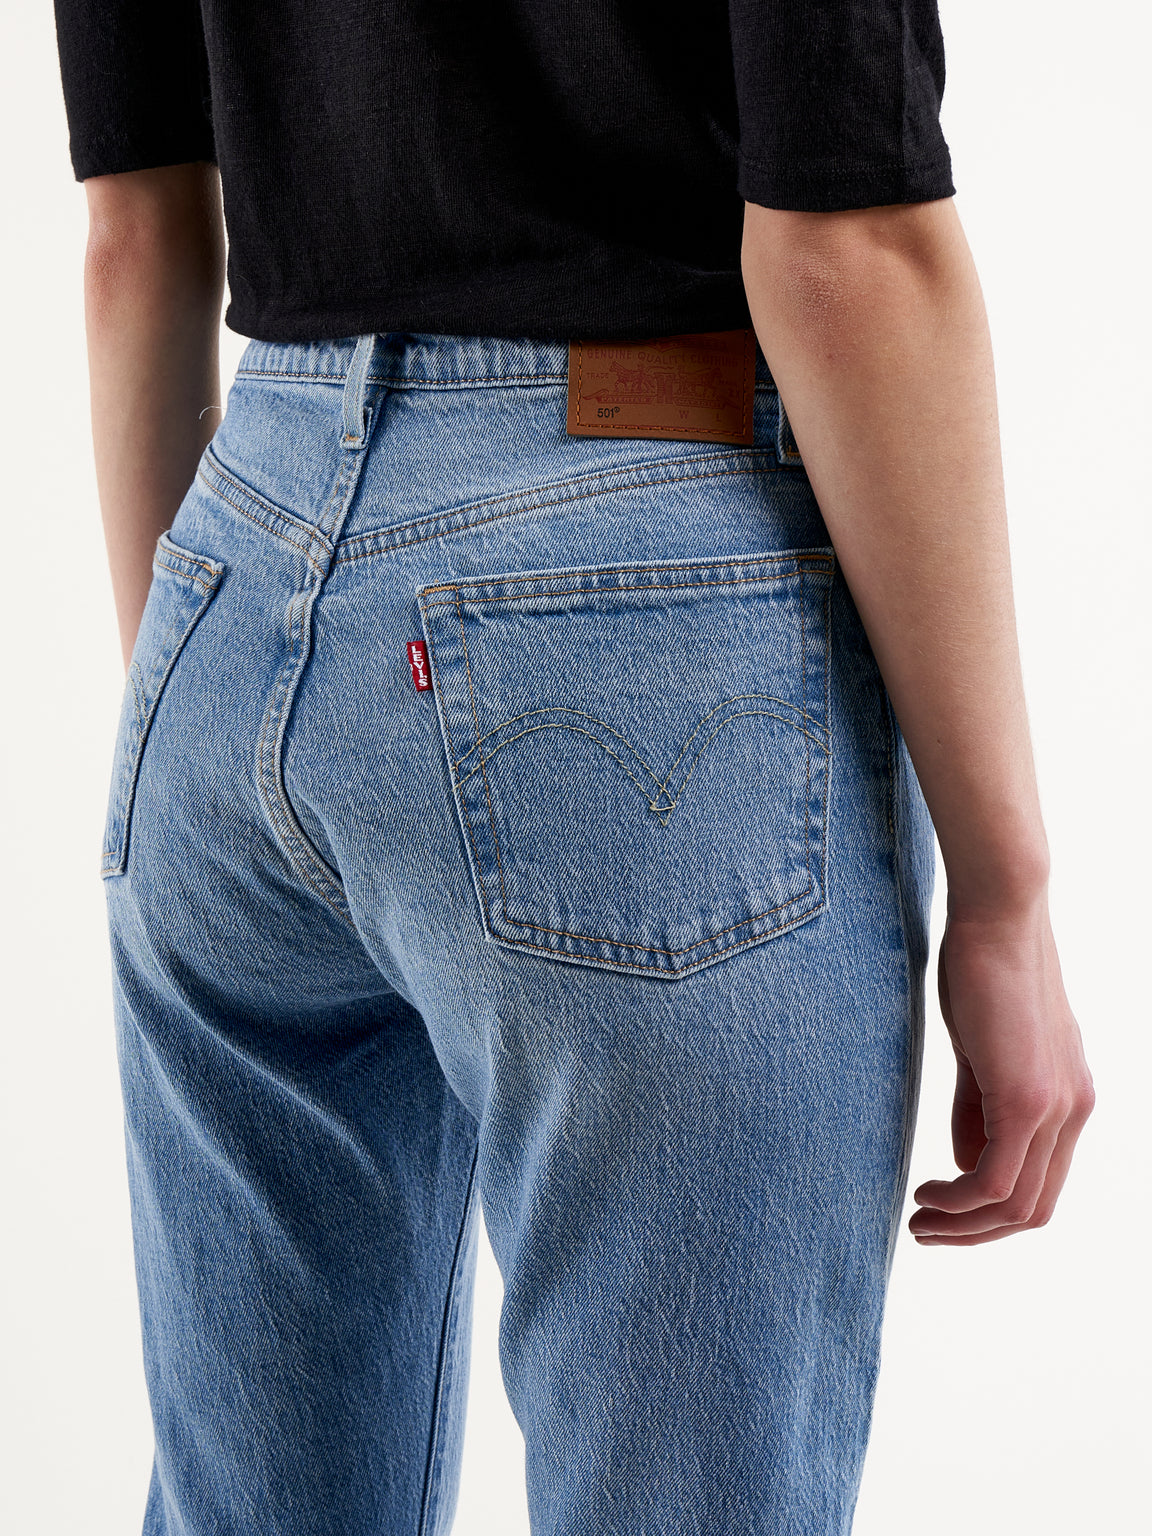 Shop Levi's 501 Original Jeans (STONEWASH)